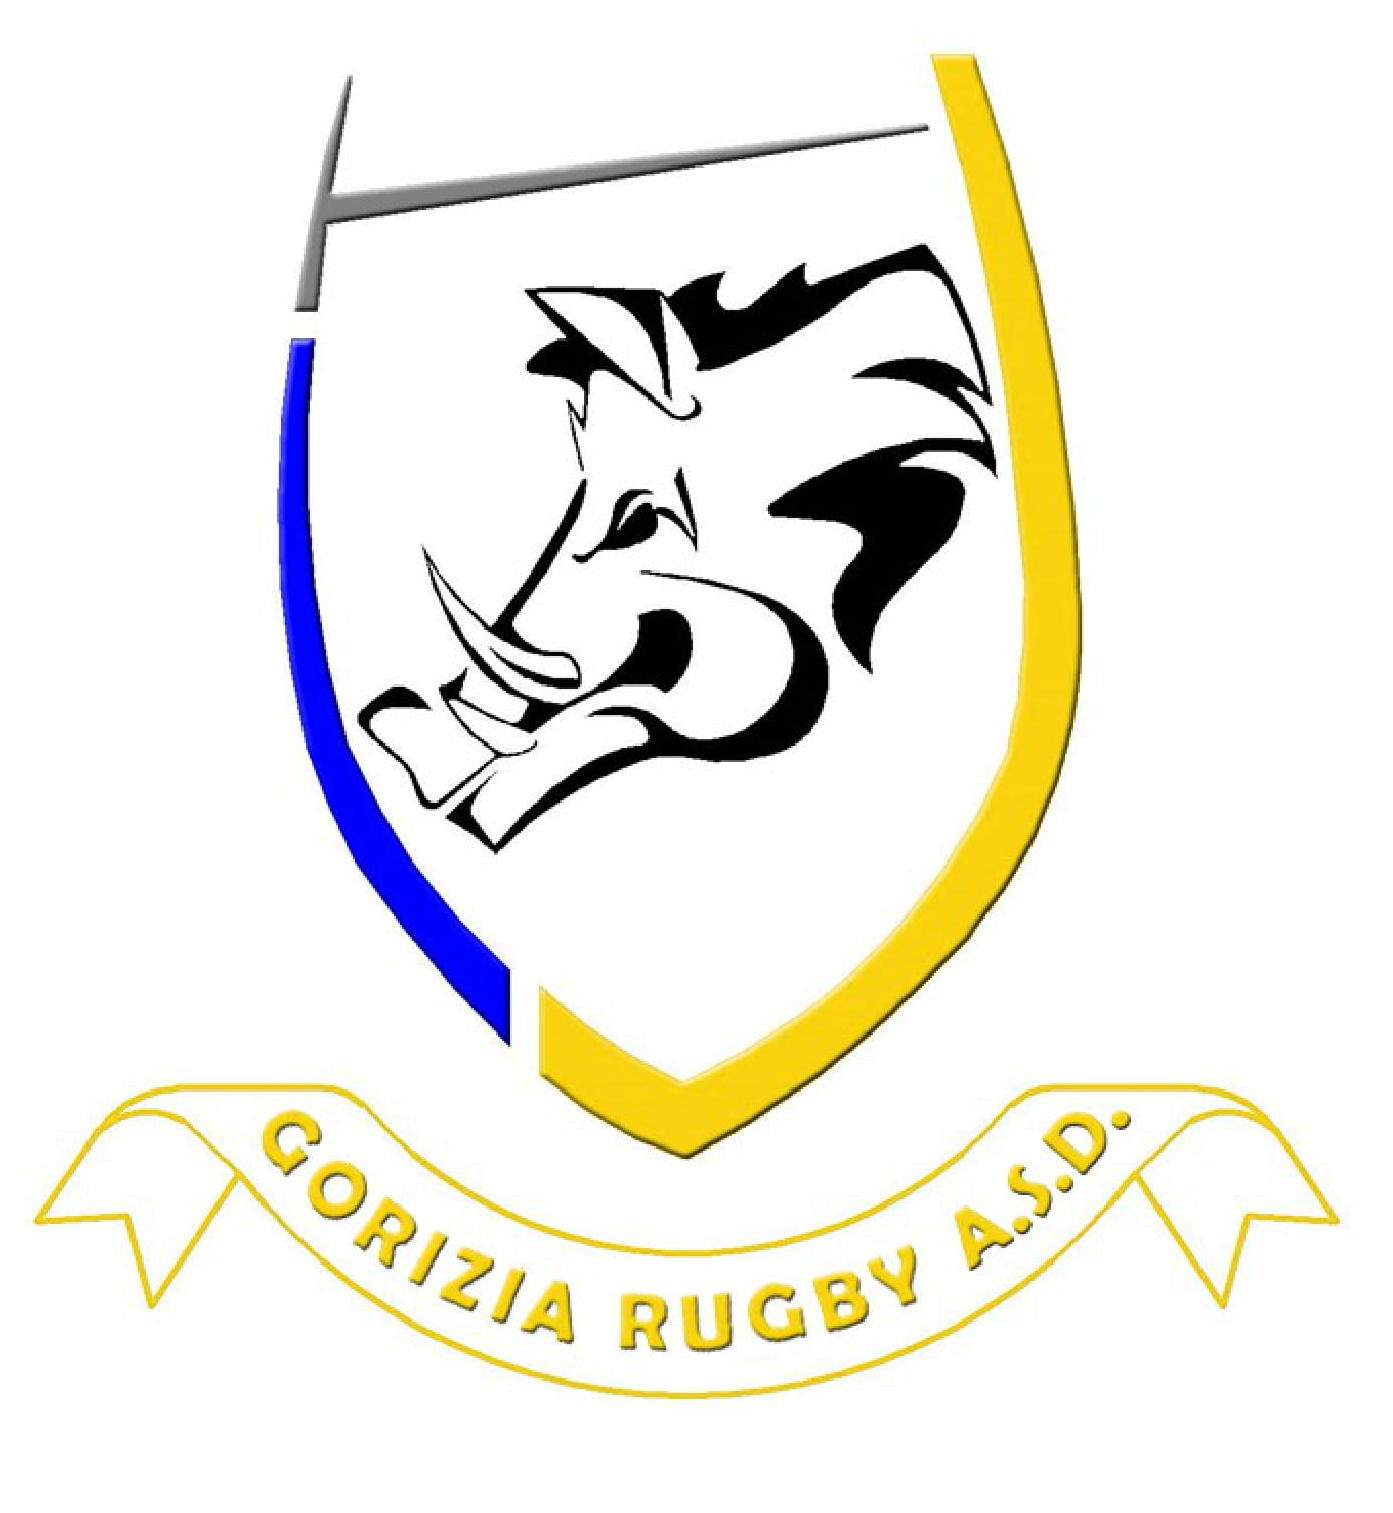 Gorizia Rugby ASD